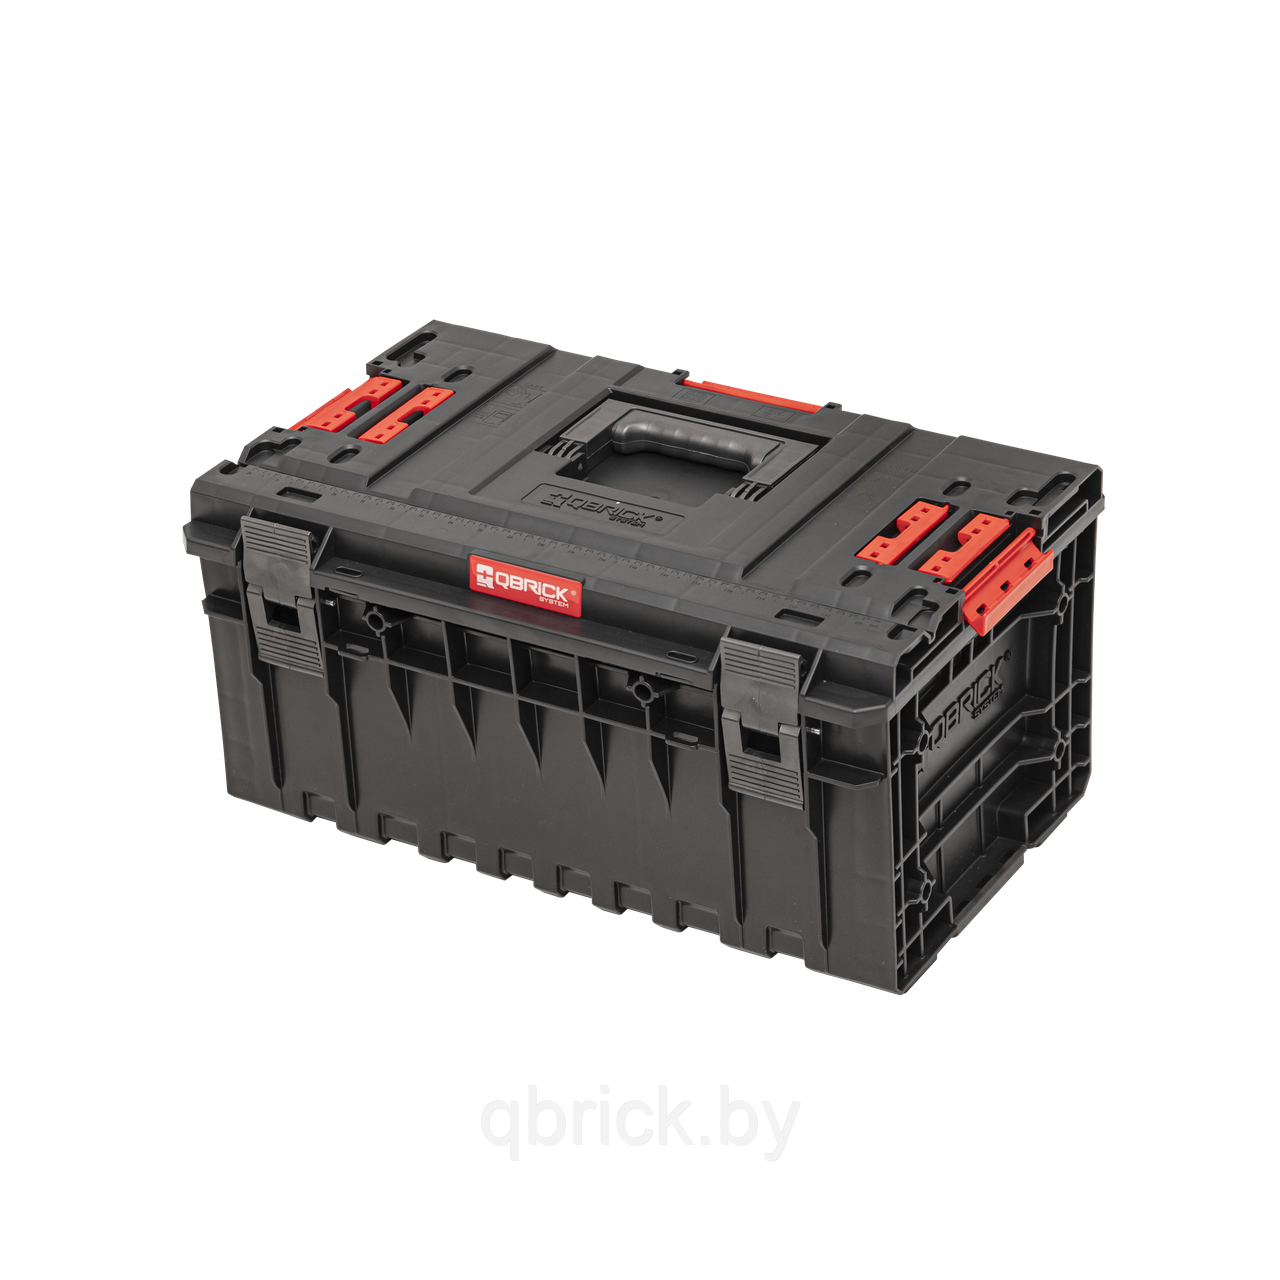 Ящик для инструментов Qbrick System ONE 350 Vario 2.0, черный